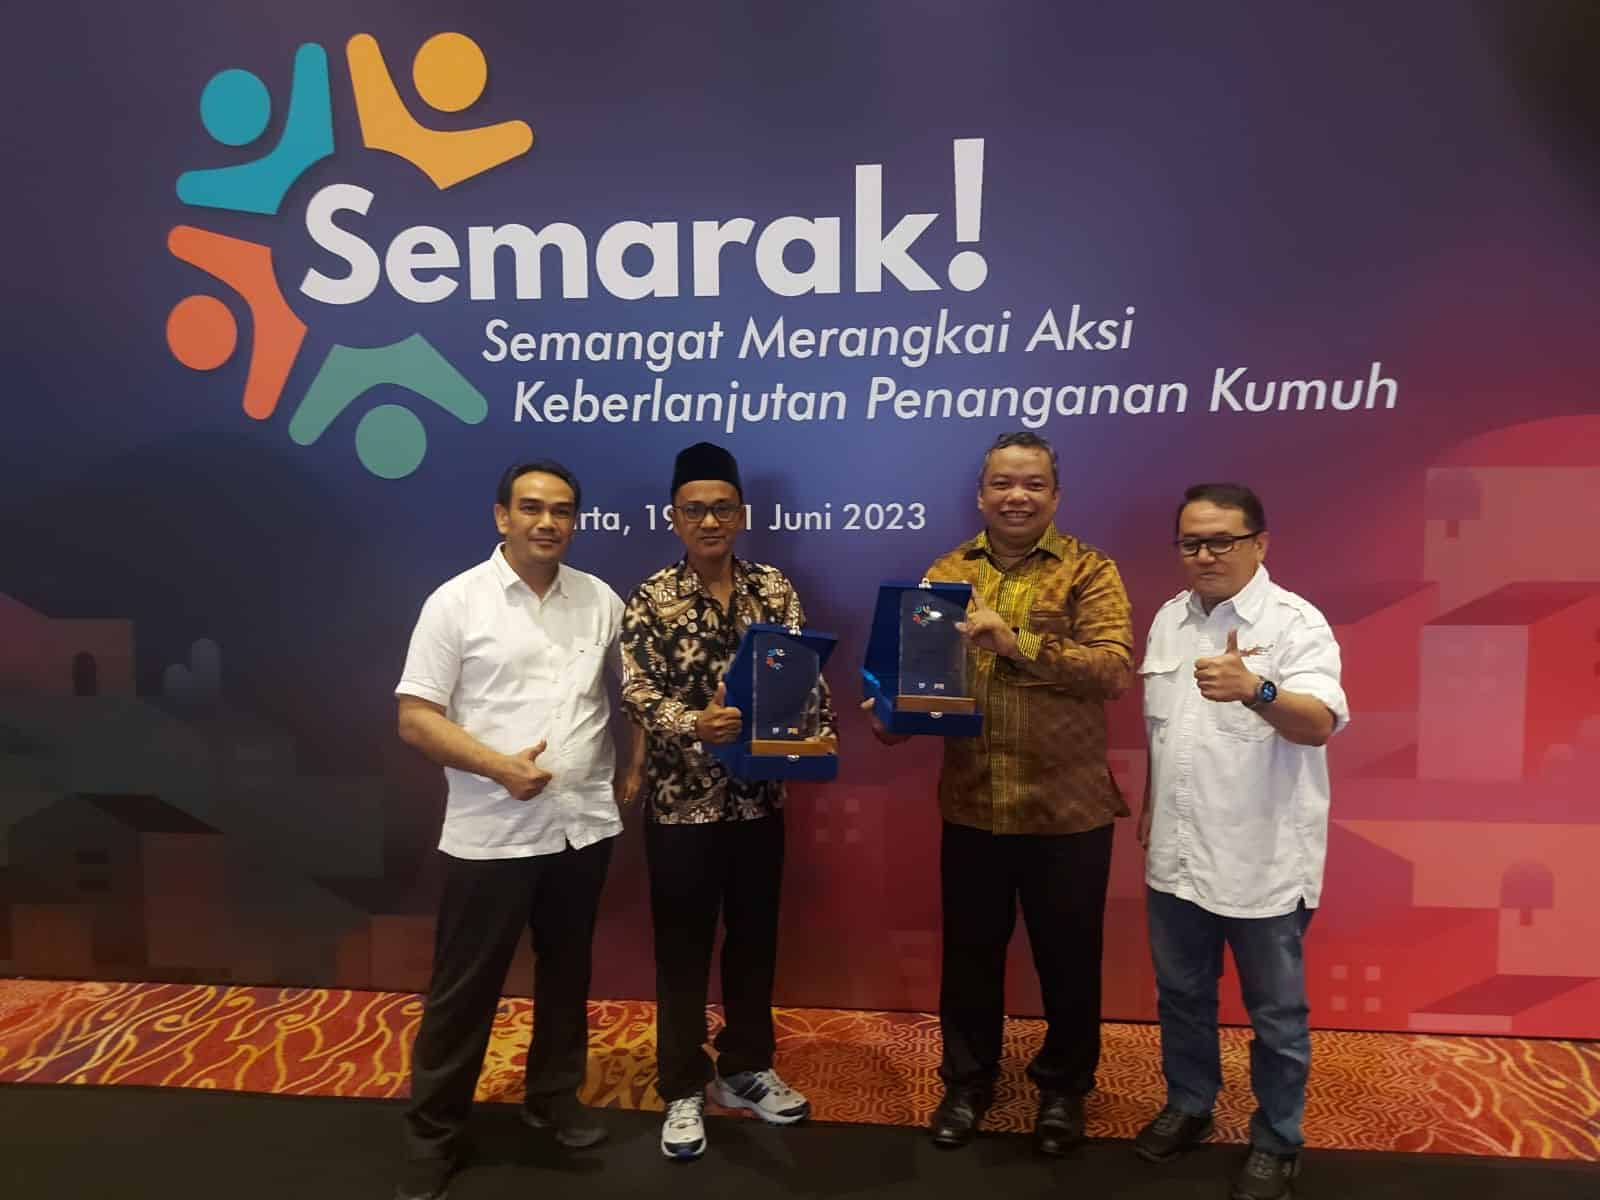 Kedua penghargaan Kotaku Award 2023 diterima di Hotel Bidakara Jakarta, Rabu (21/06/2023). (Foto: Indri)